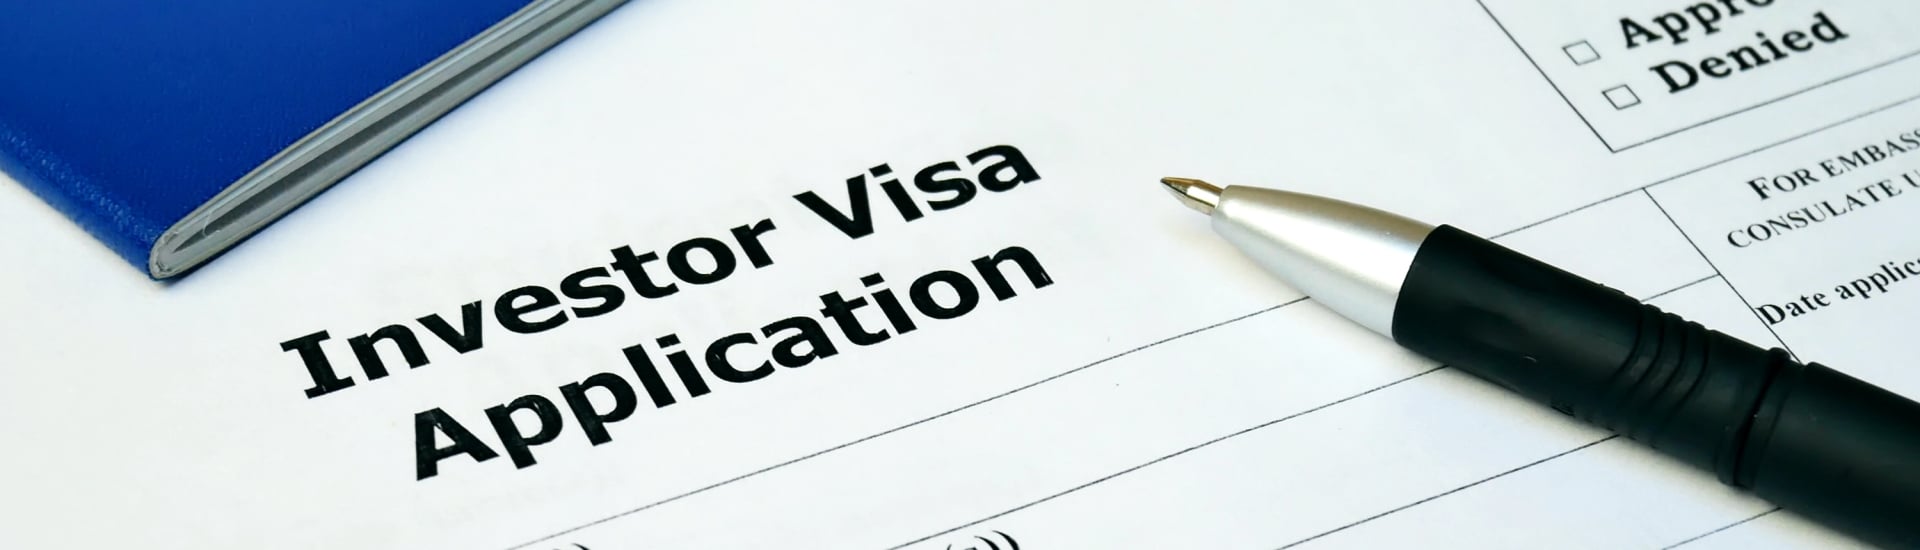 Datos Importantes Para Obtener Visa De Inversionista Y Comerciante 9563